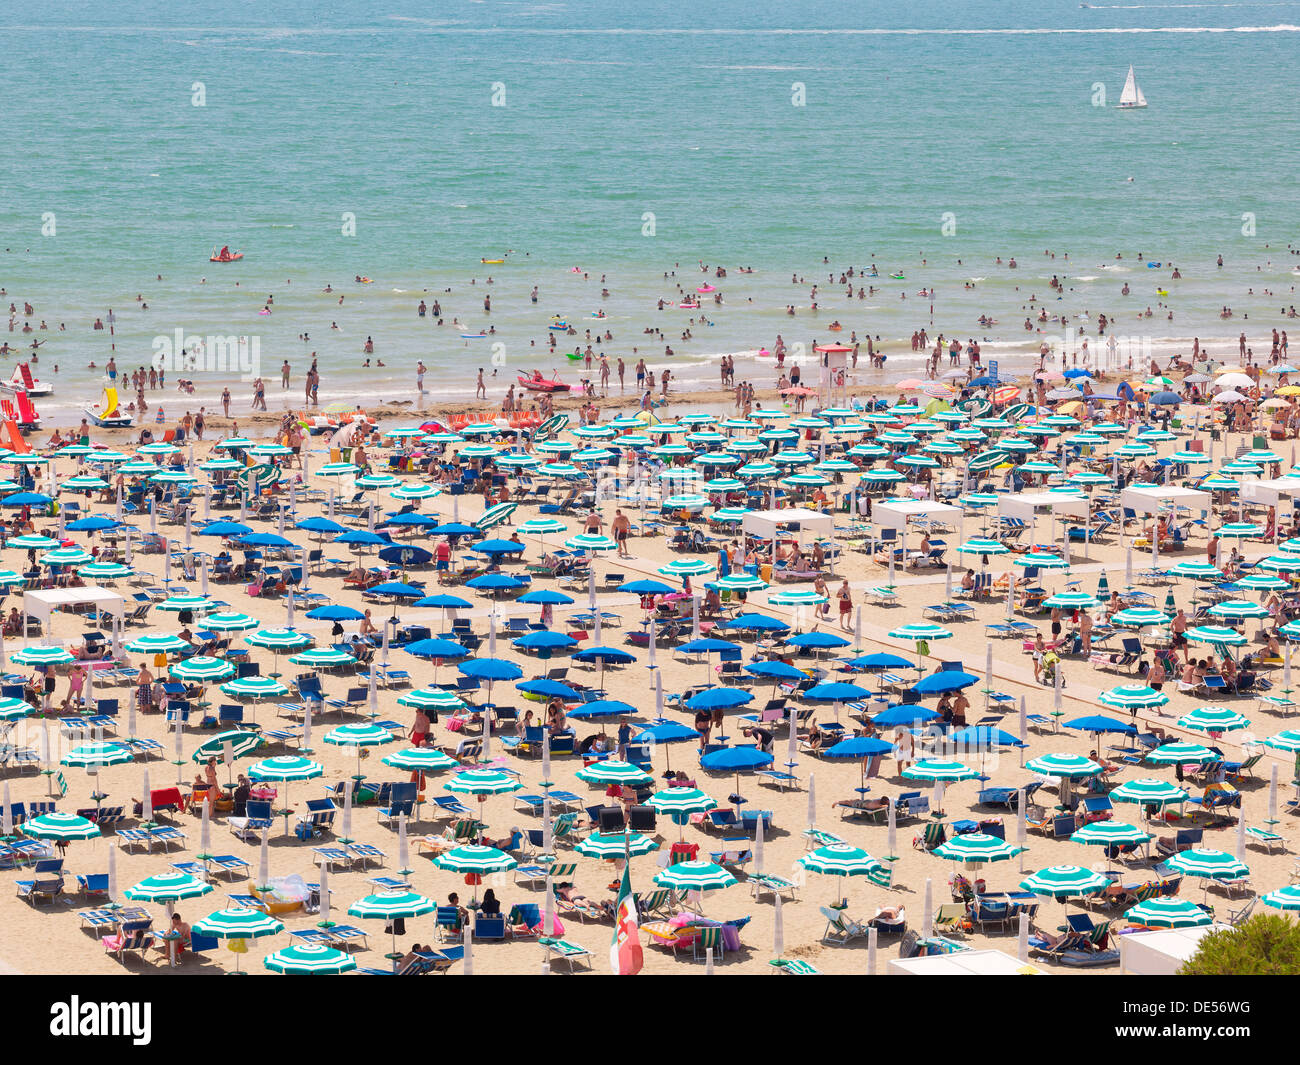 Vue de la plage avec des parasols, des chaises longues et des baigneurs, Lignano Sabbiadoro, Udine, Côte Adriatique, Italie, Europe Banque D'Images